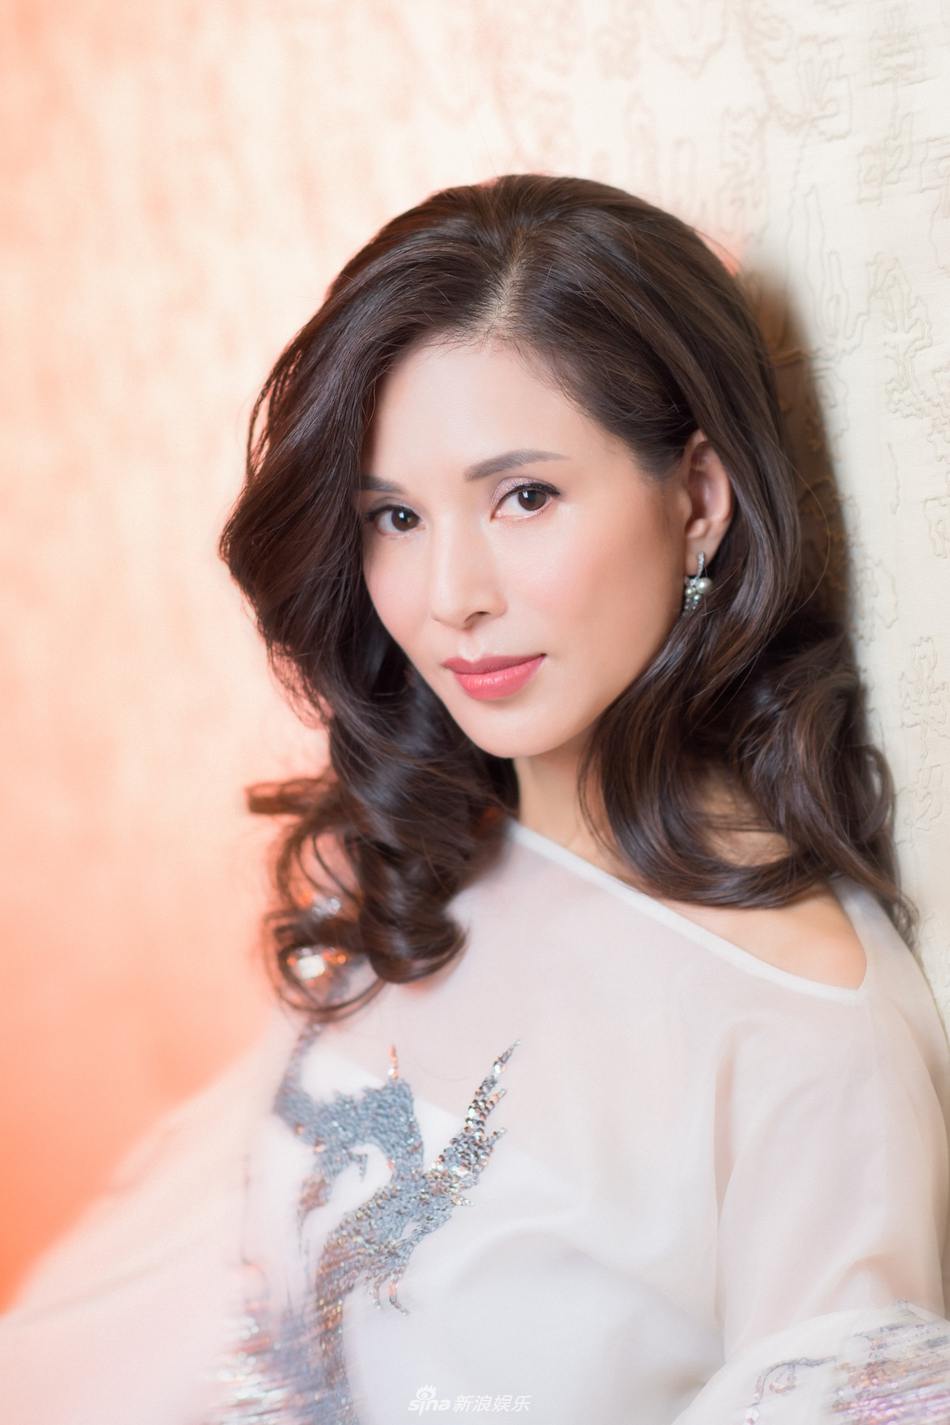 24h HOT: Hoa hậu Ngọc Hân đồng ý đi ăn tối với Văn Lâm bị nói "đu bám" - 3